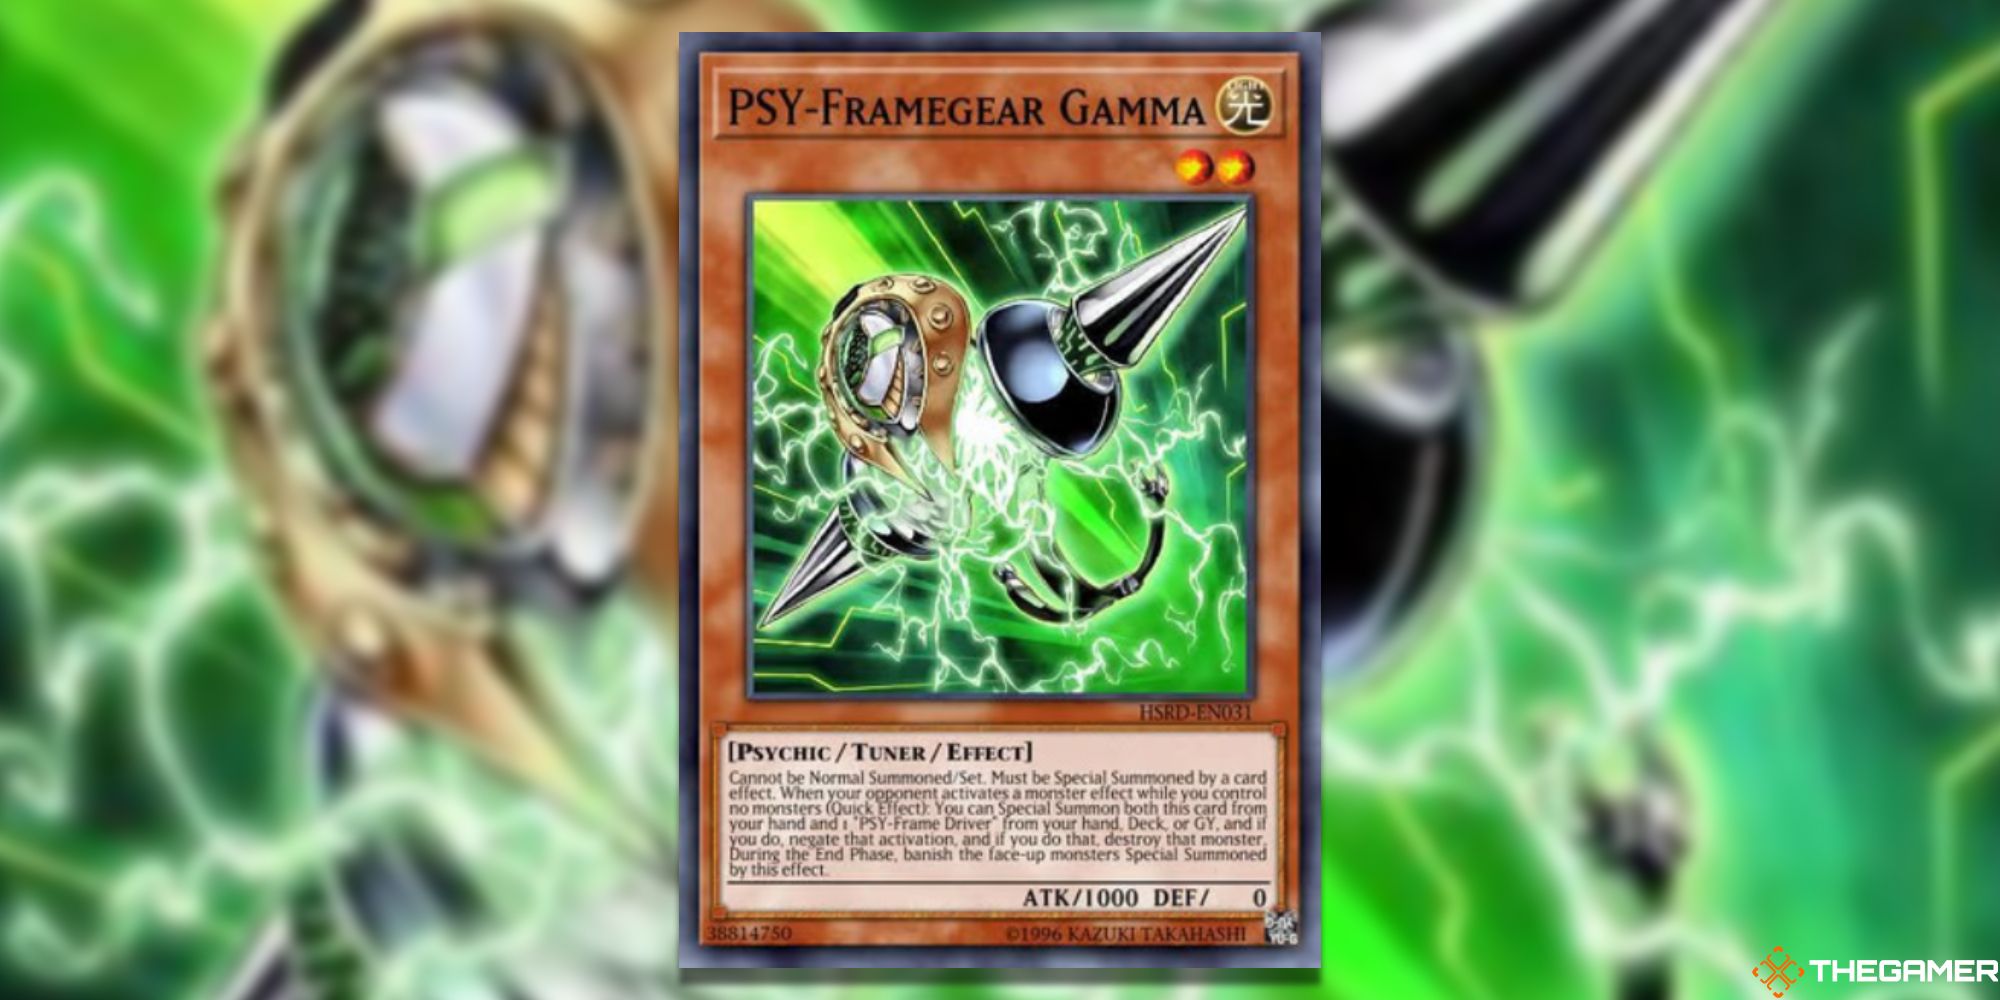 Yu-Gi-Oh! PSY-Framegear Gamma on blurred background